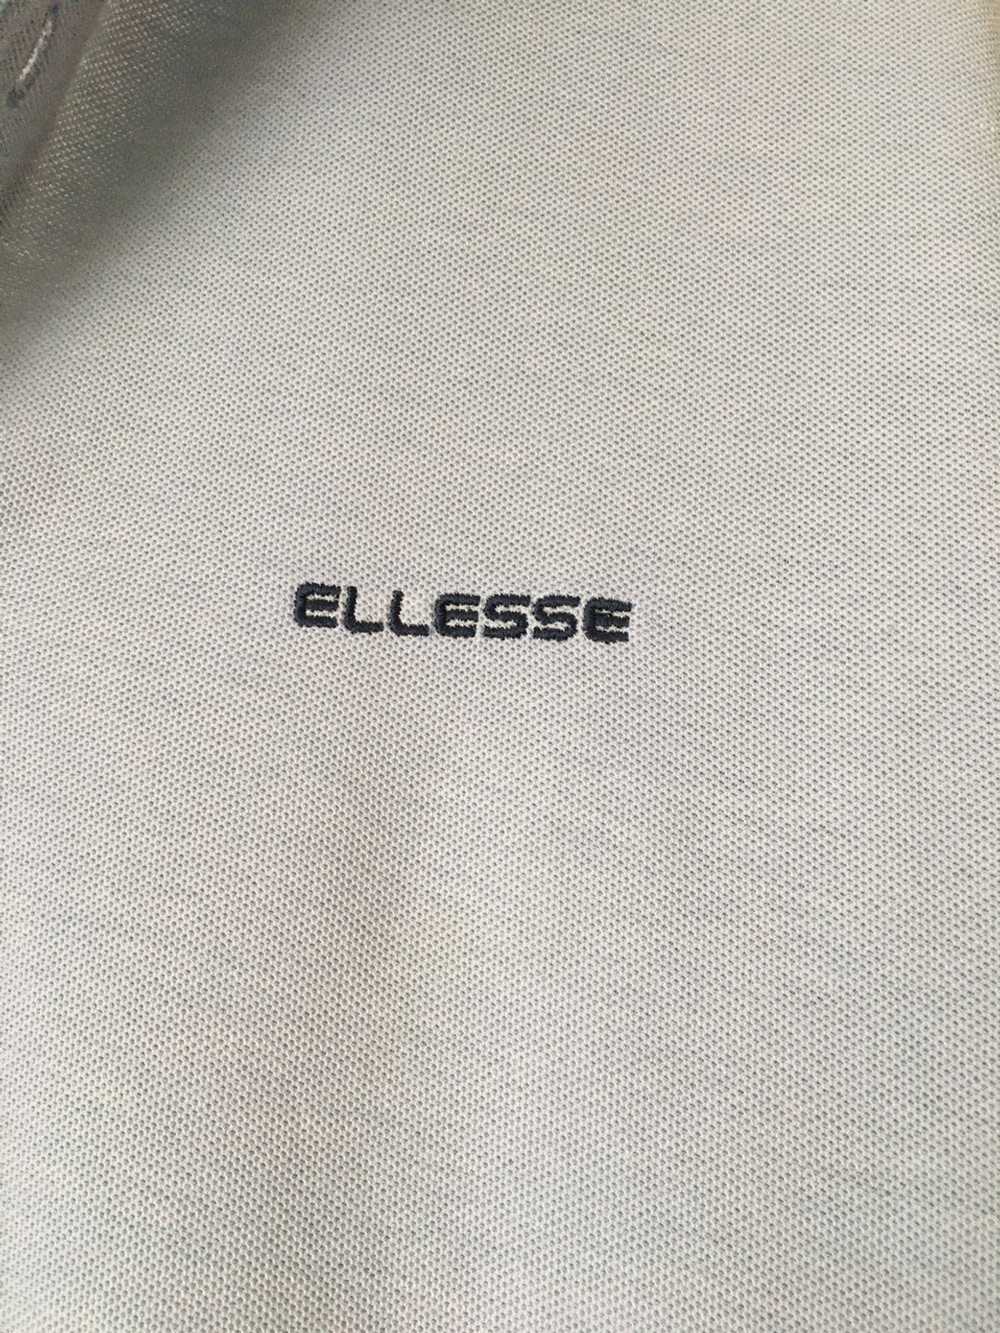 Ellesse × Vintage Vintage Ellesse Polo Shirt - image 3